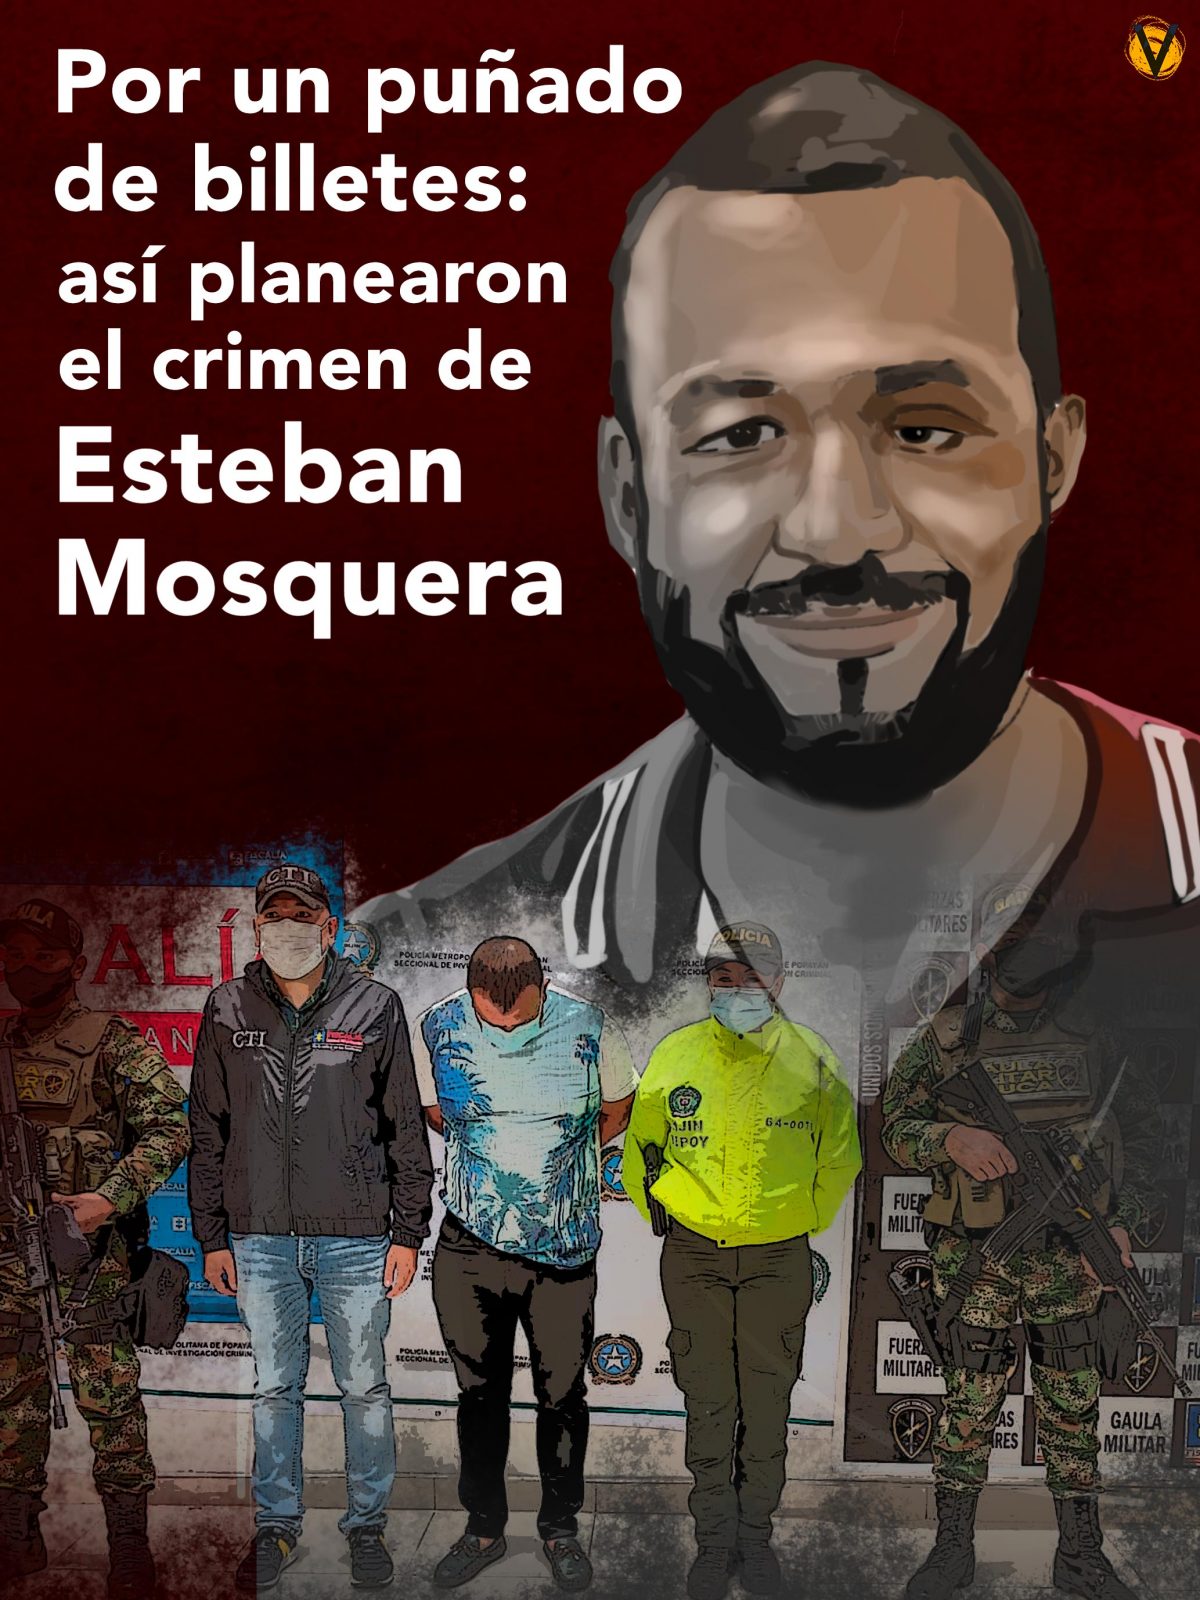 Esteban Mosquera